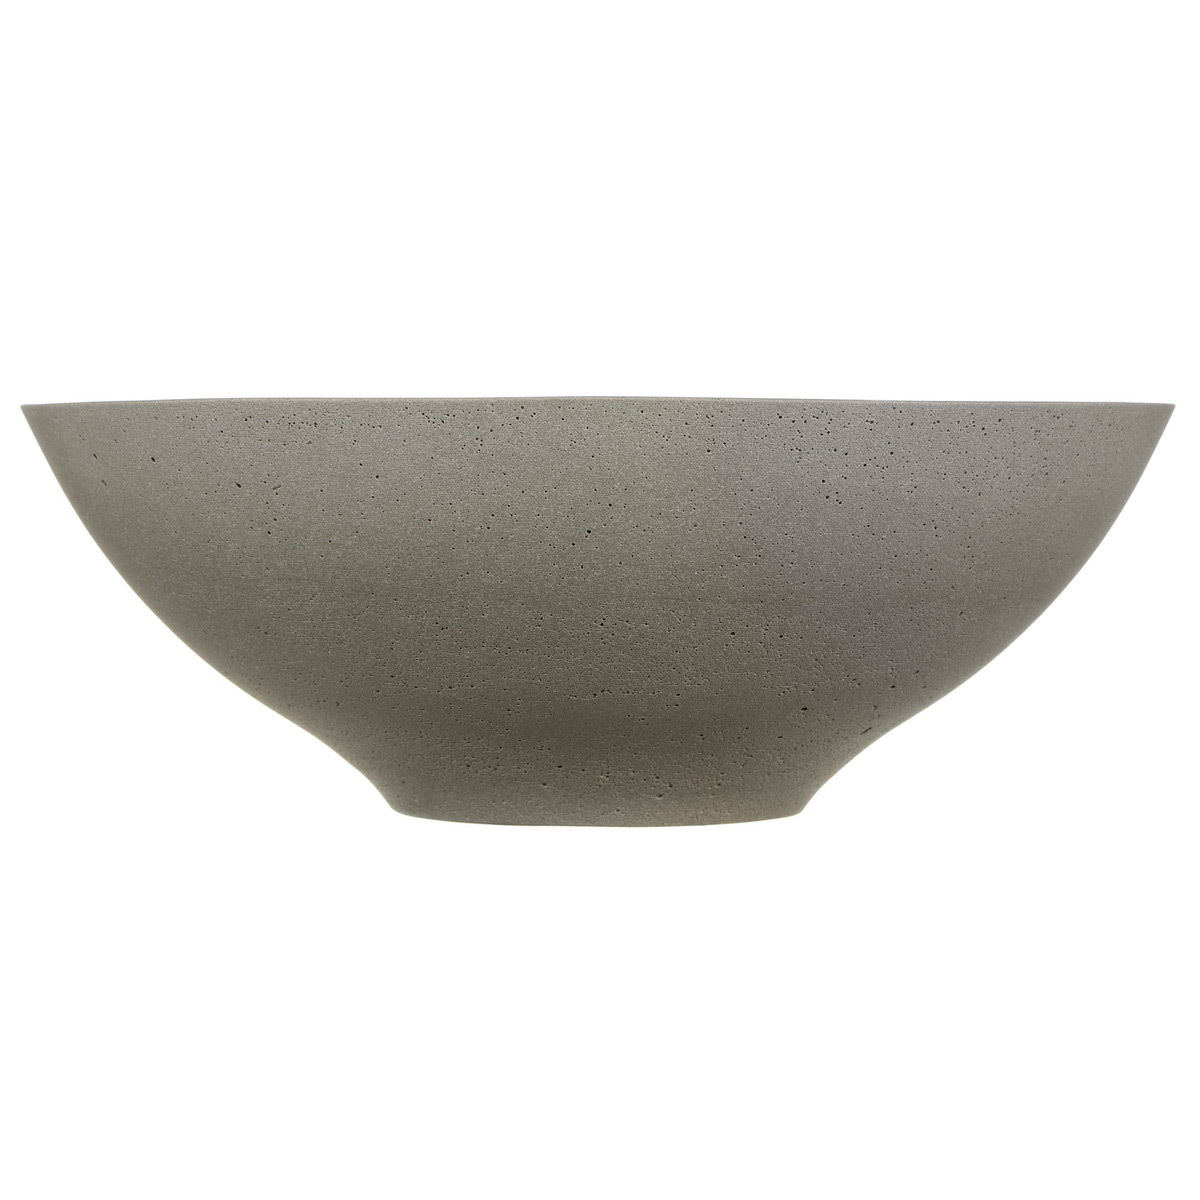 Кашпо настольное Idealist Stone Dish Bowl пепельно-серый, 32